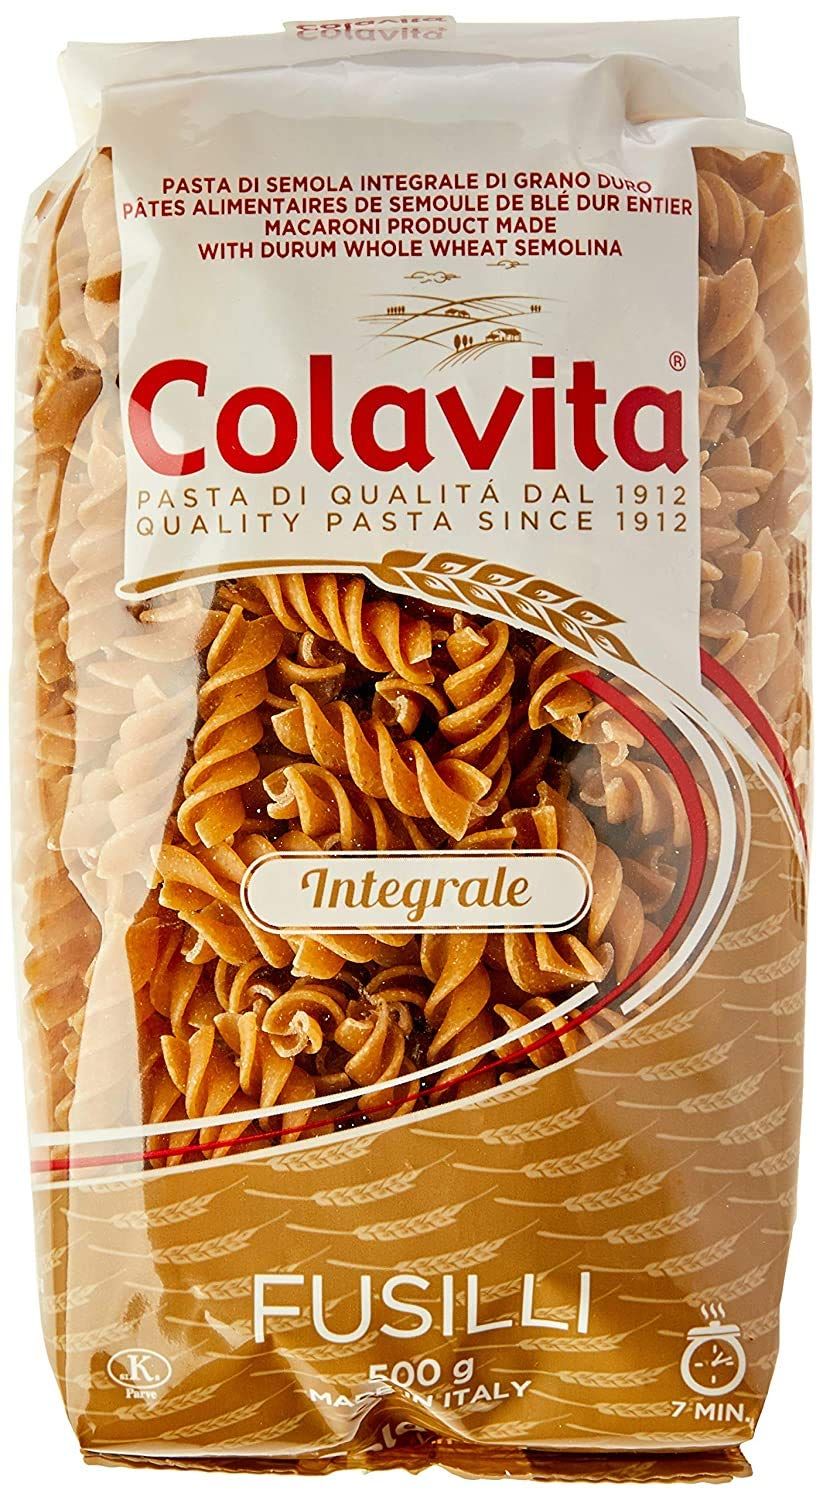 Colavita Fusilli Whole Wheat Pasta Image